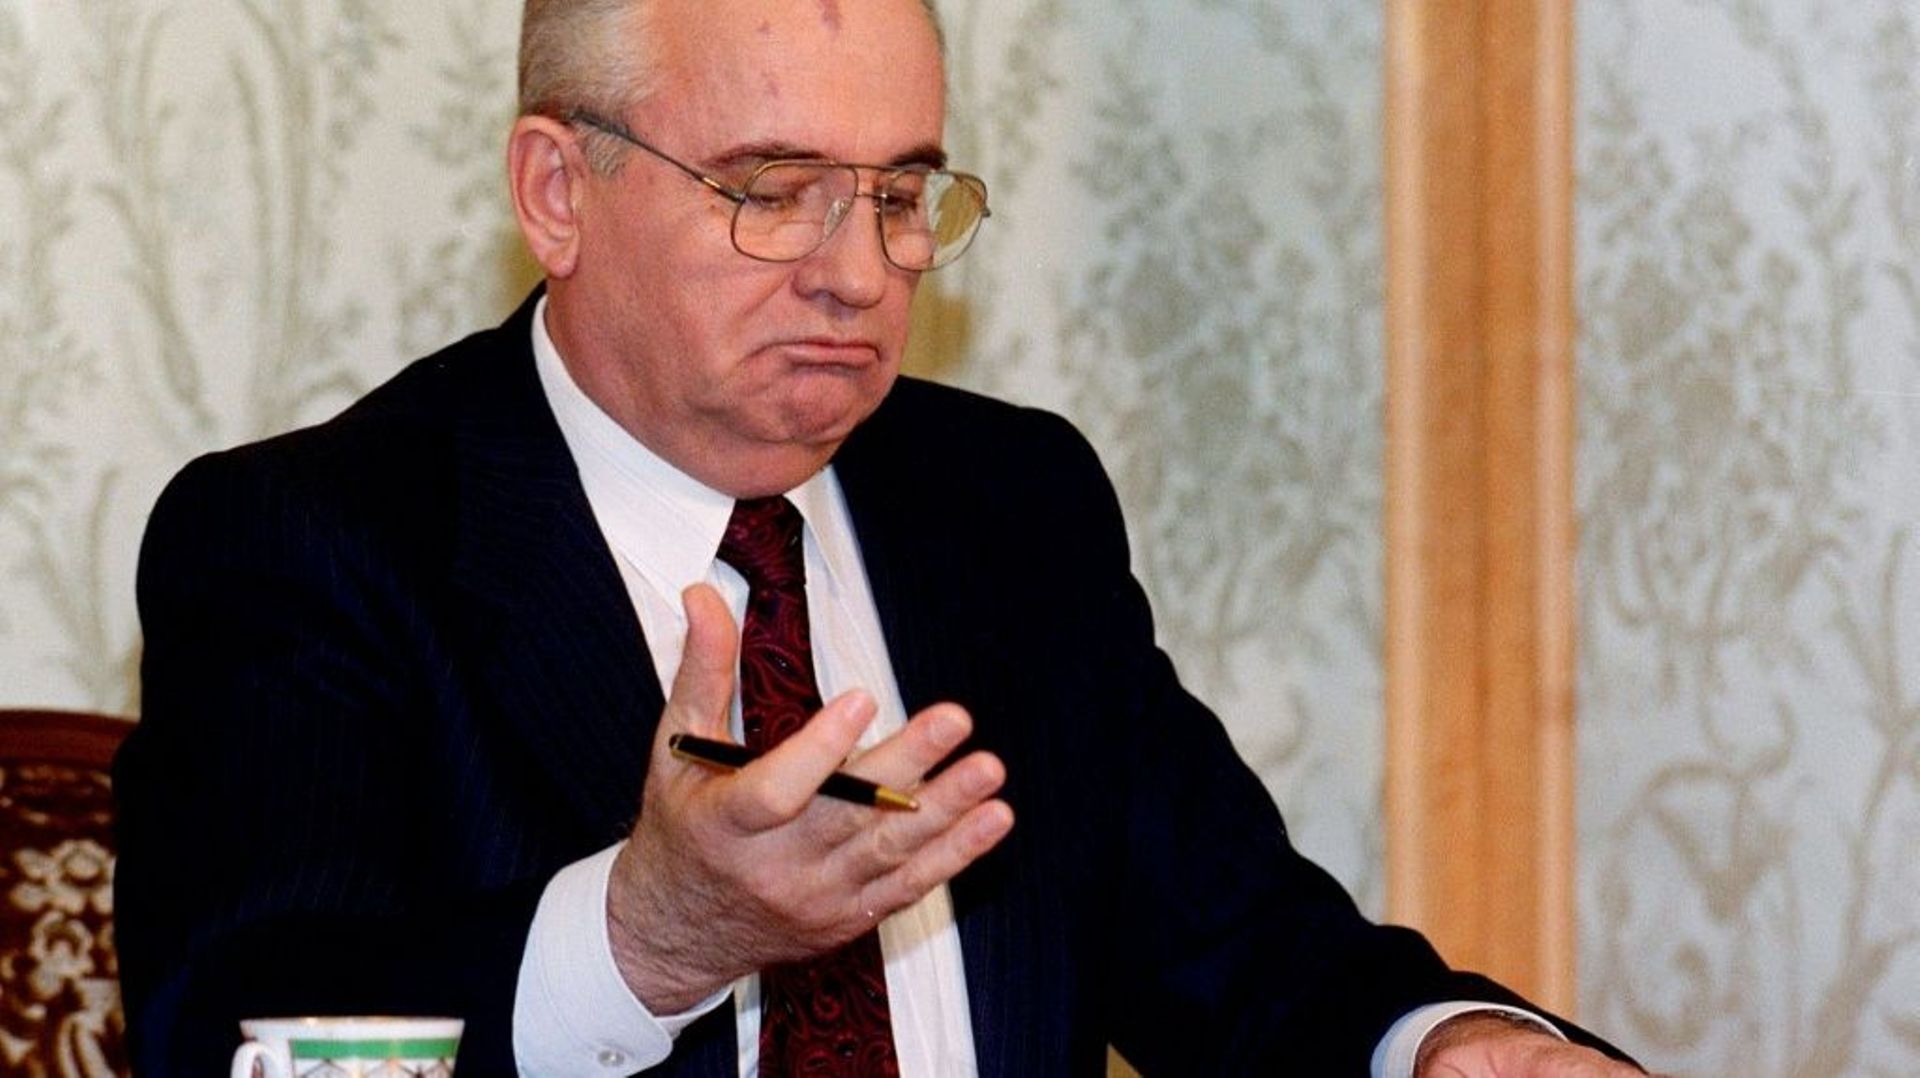 Le président soviétique Mikhaïl Gorbatchev relit la déclaration de sa démission avant de l’annoncer à la télévision, le 25 décembre 1991 à Moscou